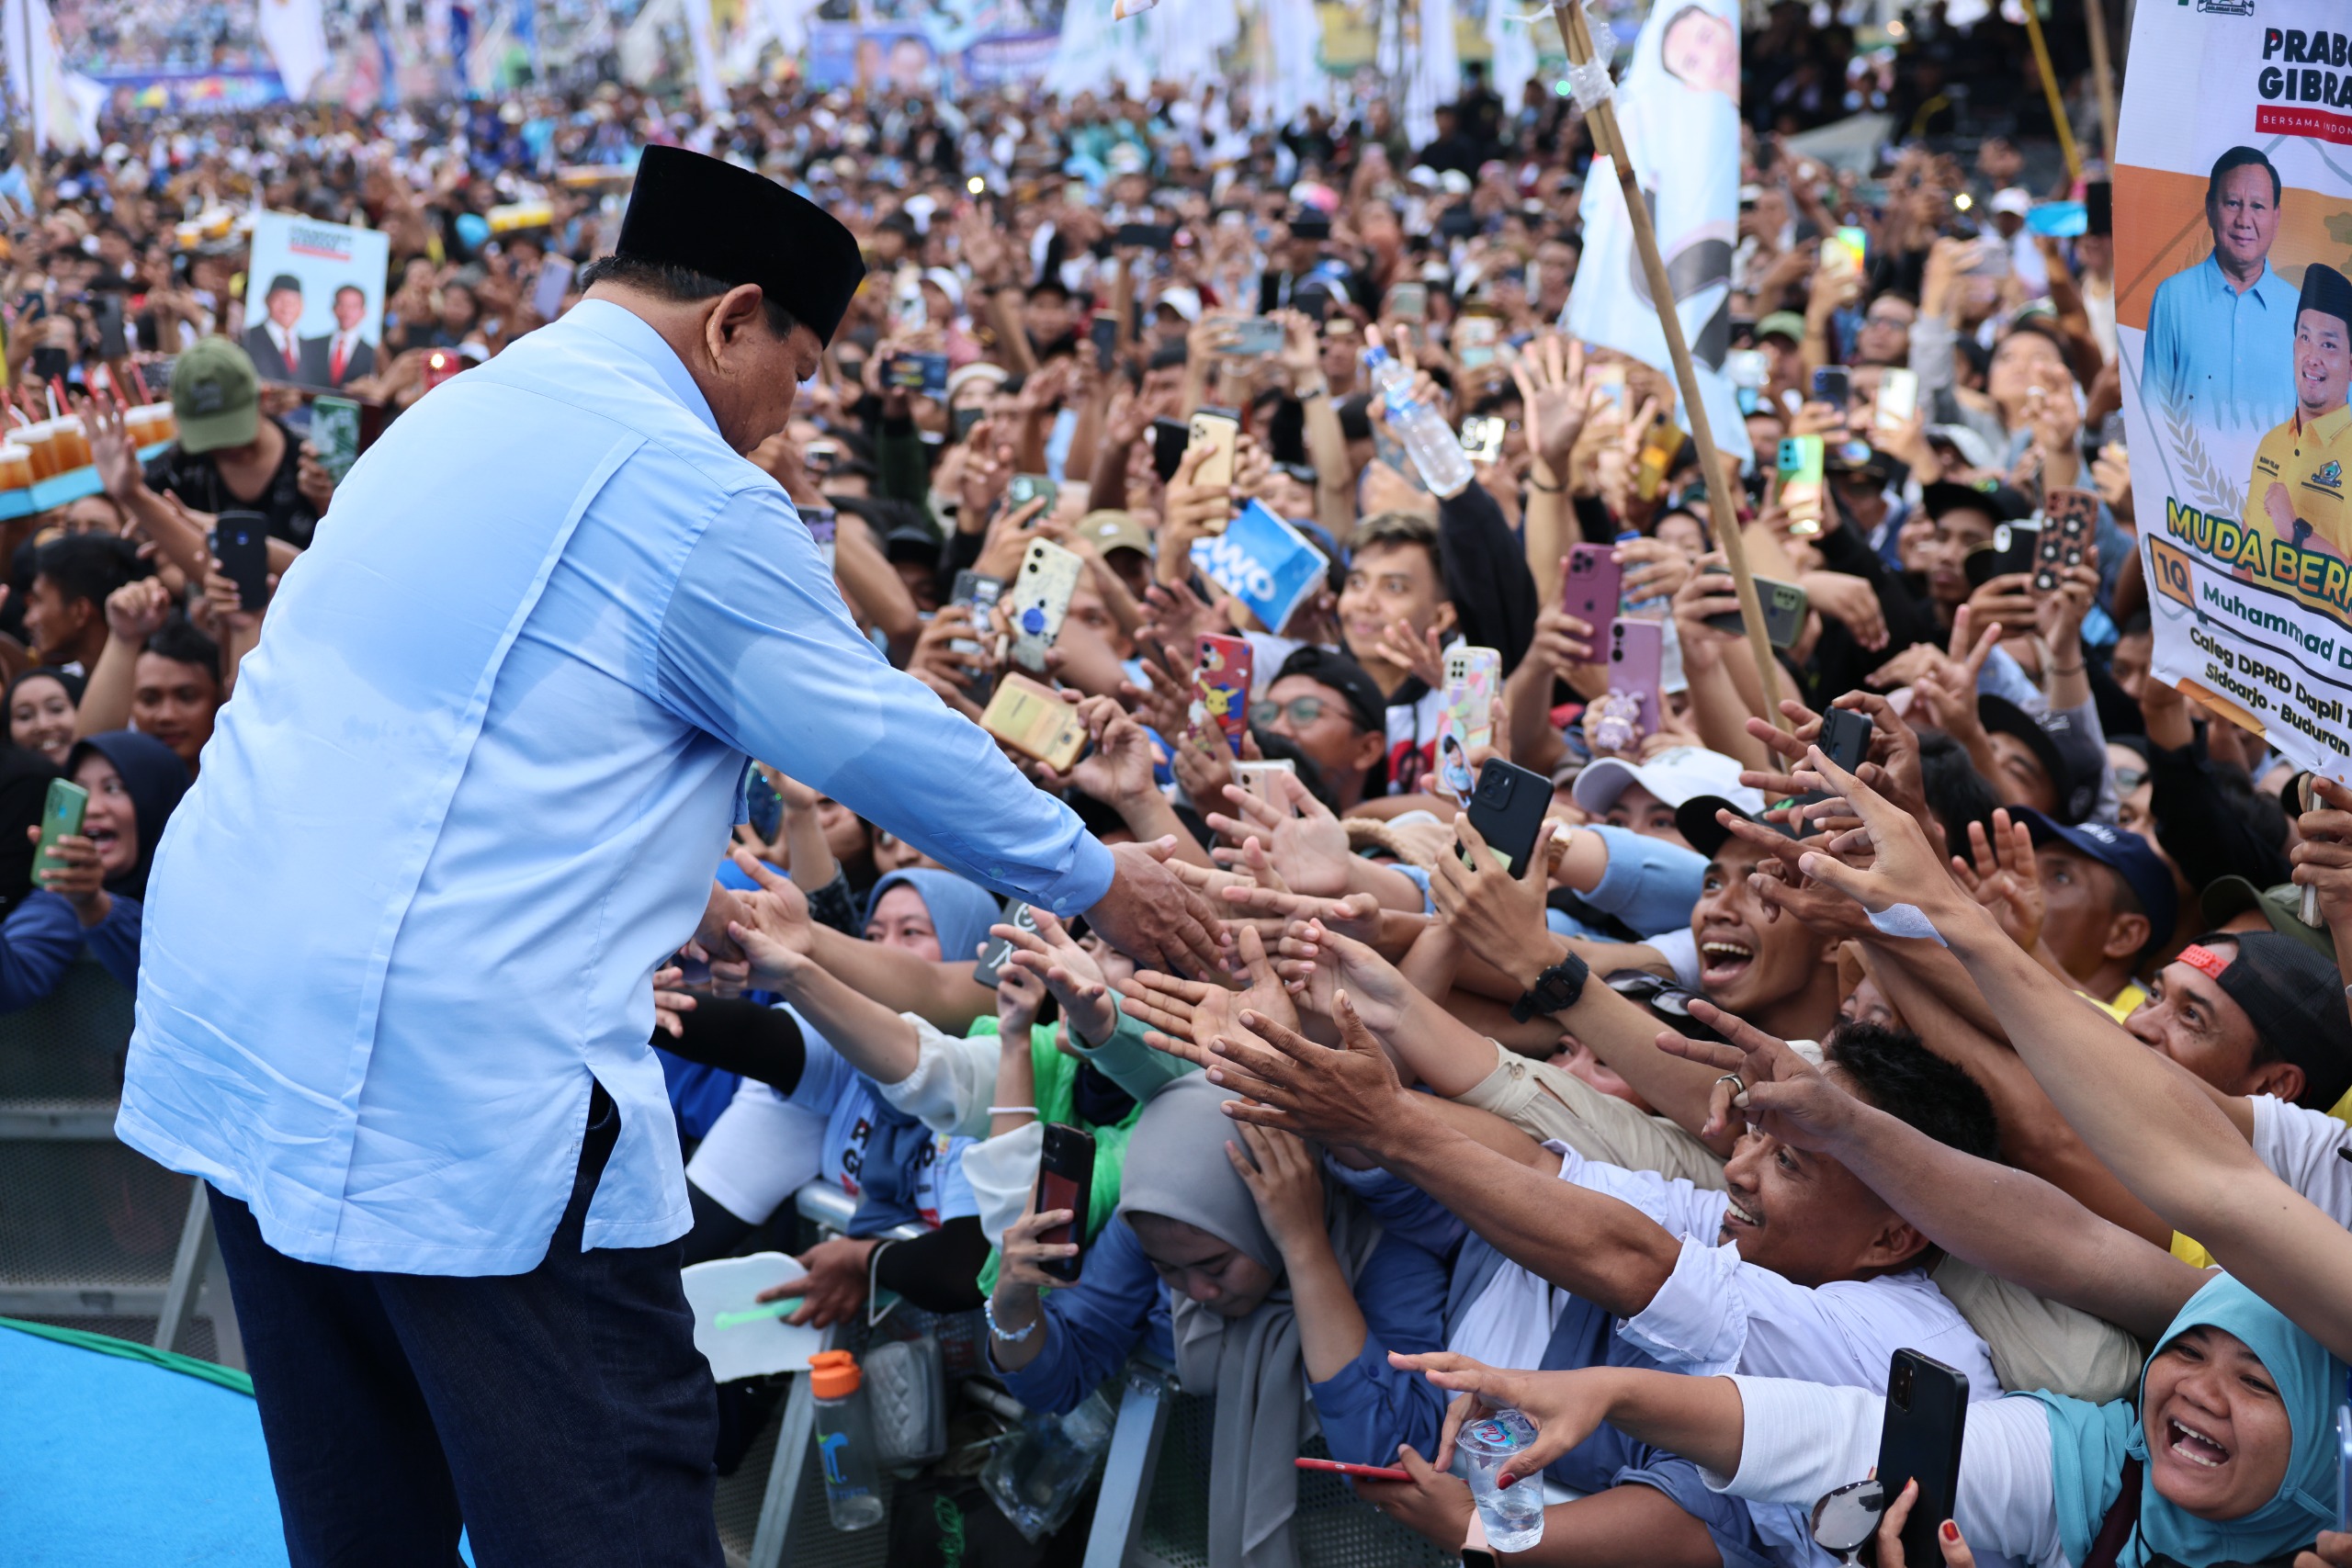 Di Sidoarjo Jawa Timur, Prabowo Turun Panggung Sapa Ratusan Ribu Masyarakat